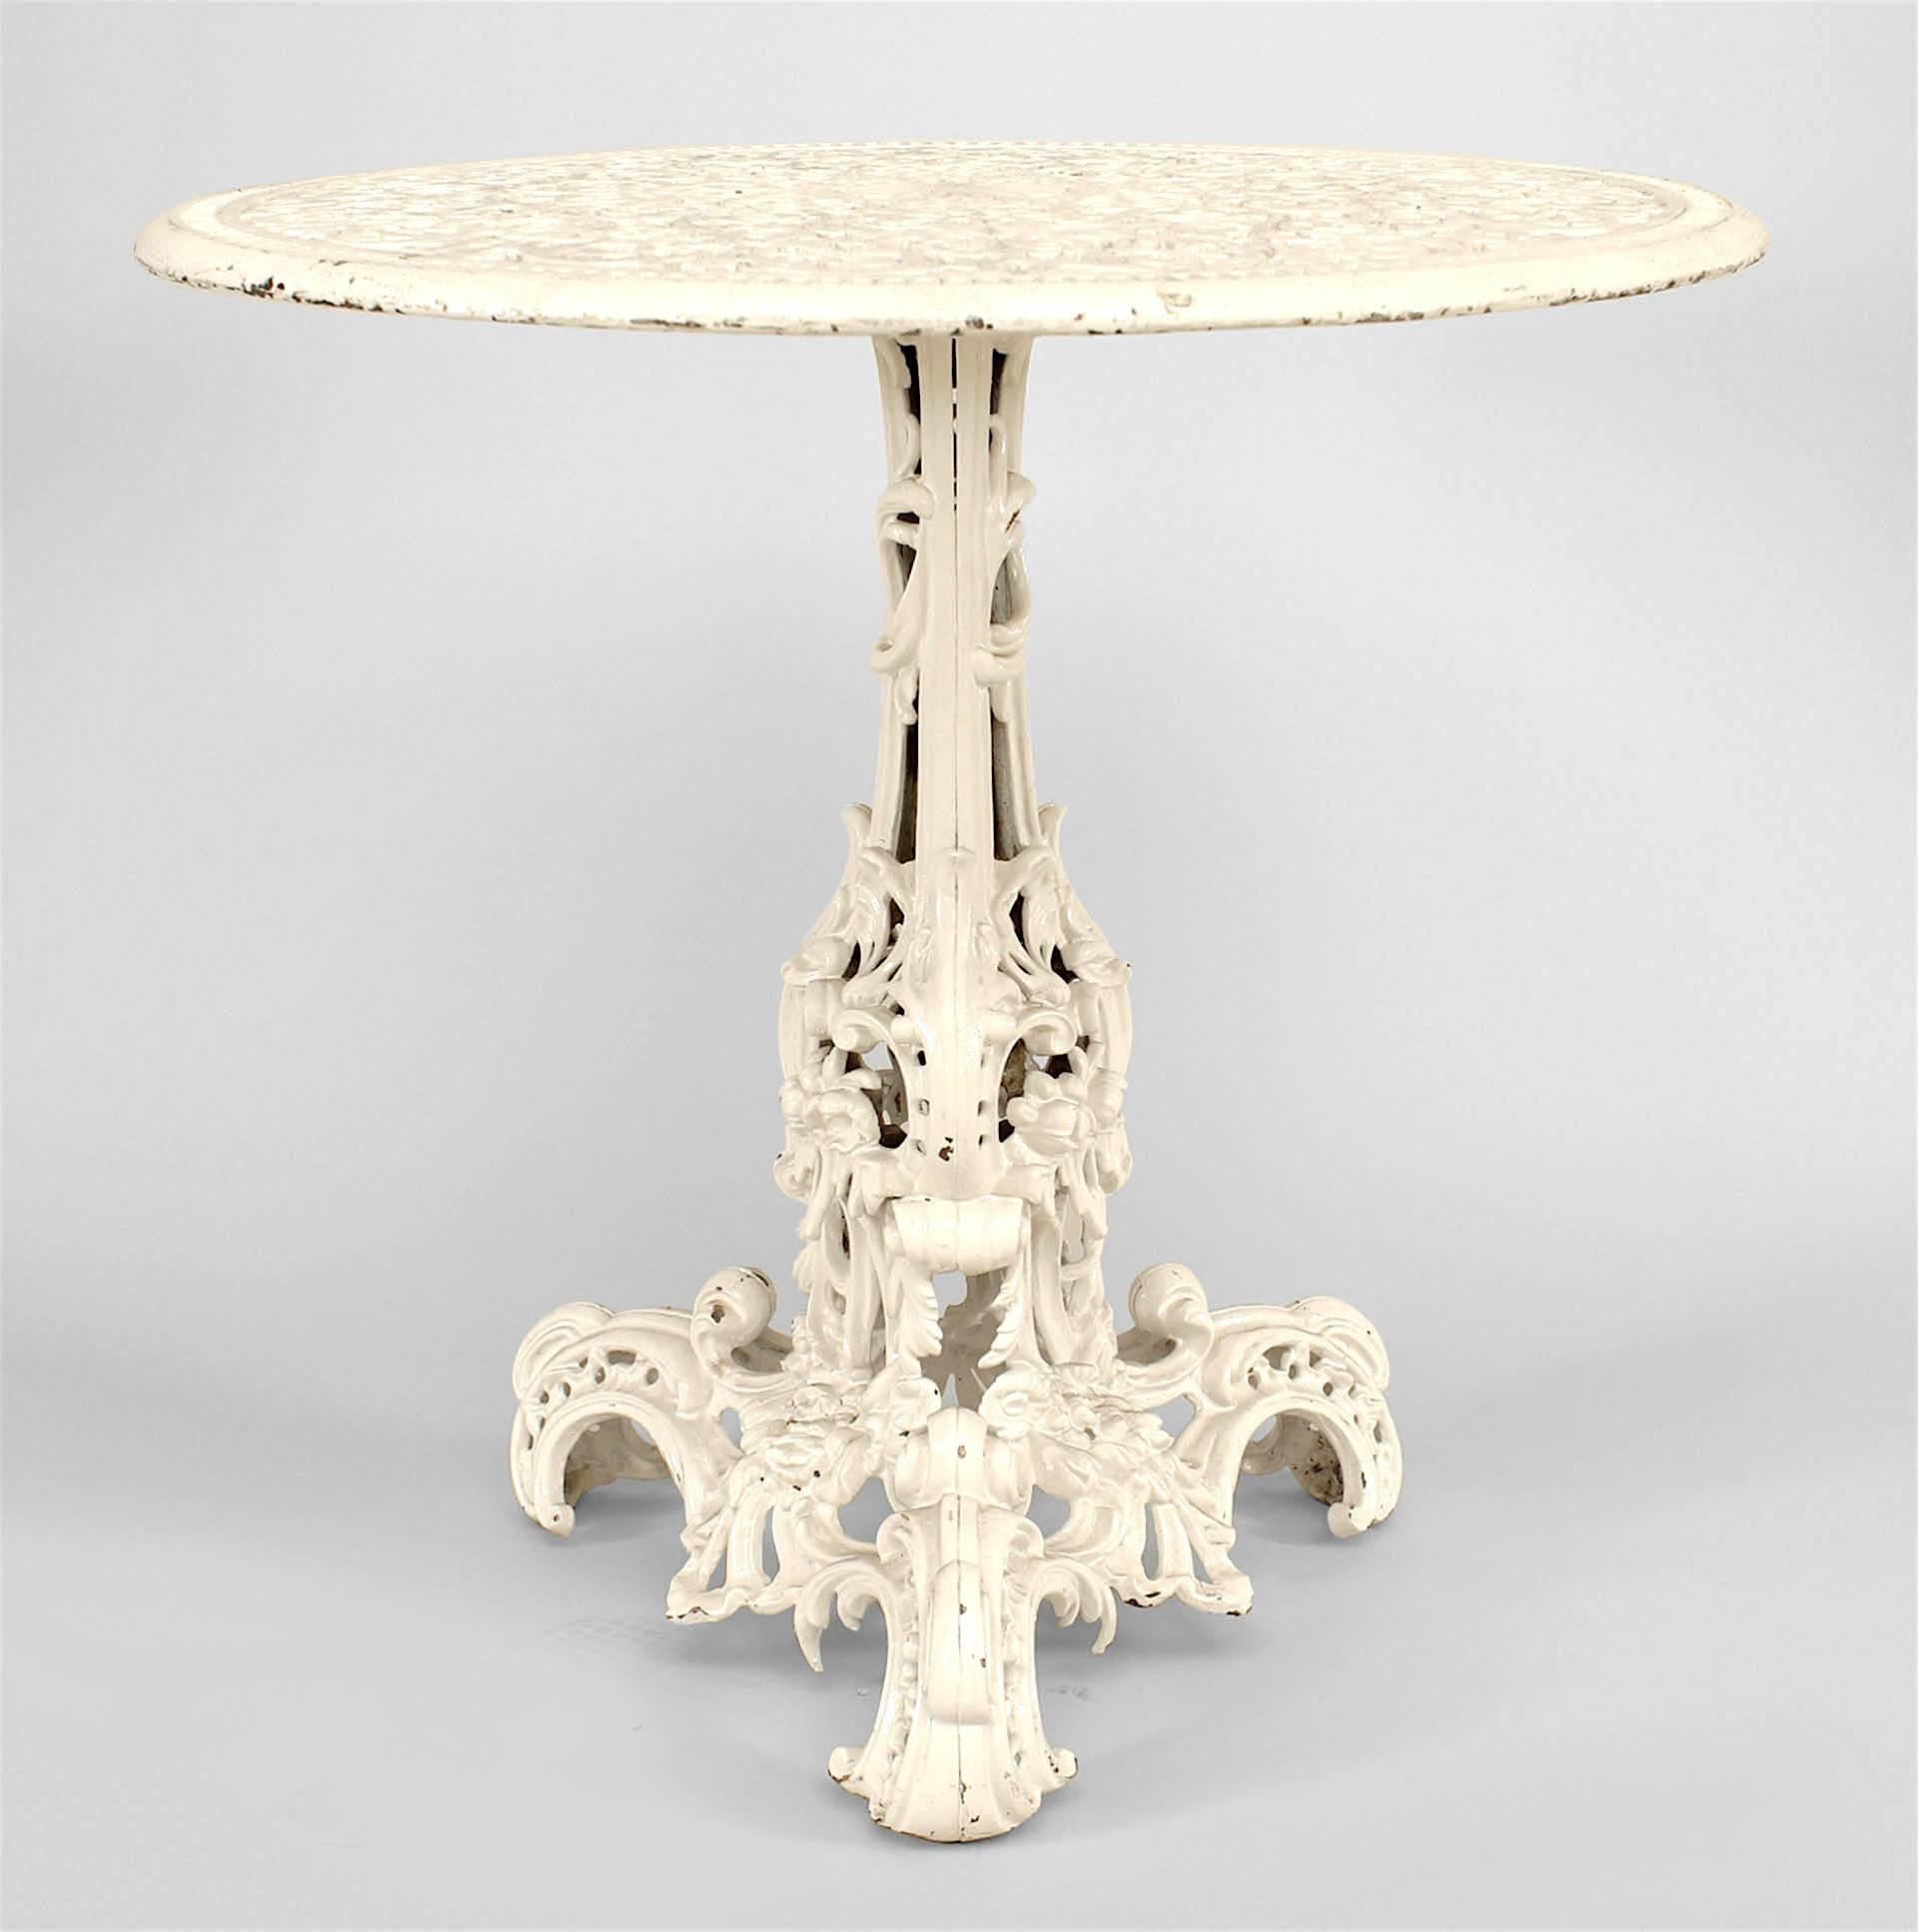 Runder amerikanischer viktorianischer Tisch aus lackiertem Eisen mit filigraner und verschnörkelter Platte und Sockel.
